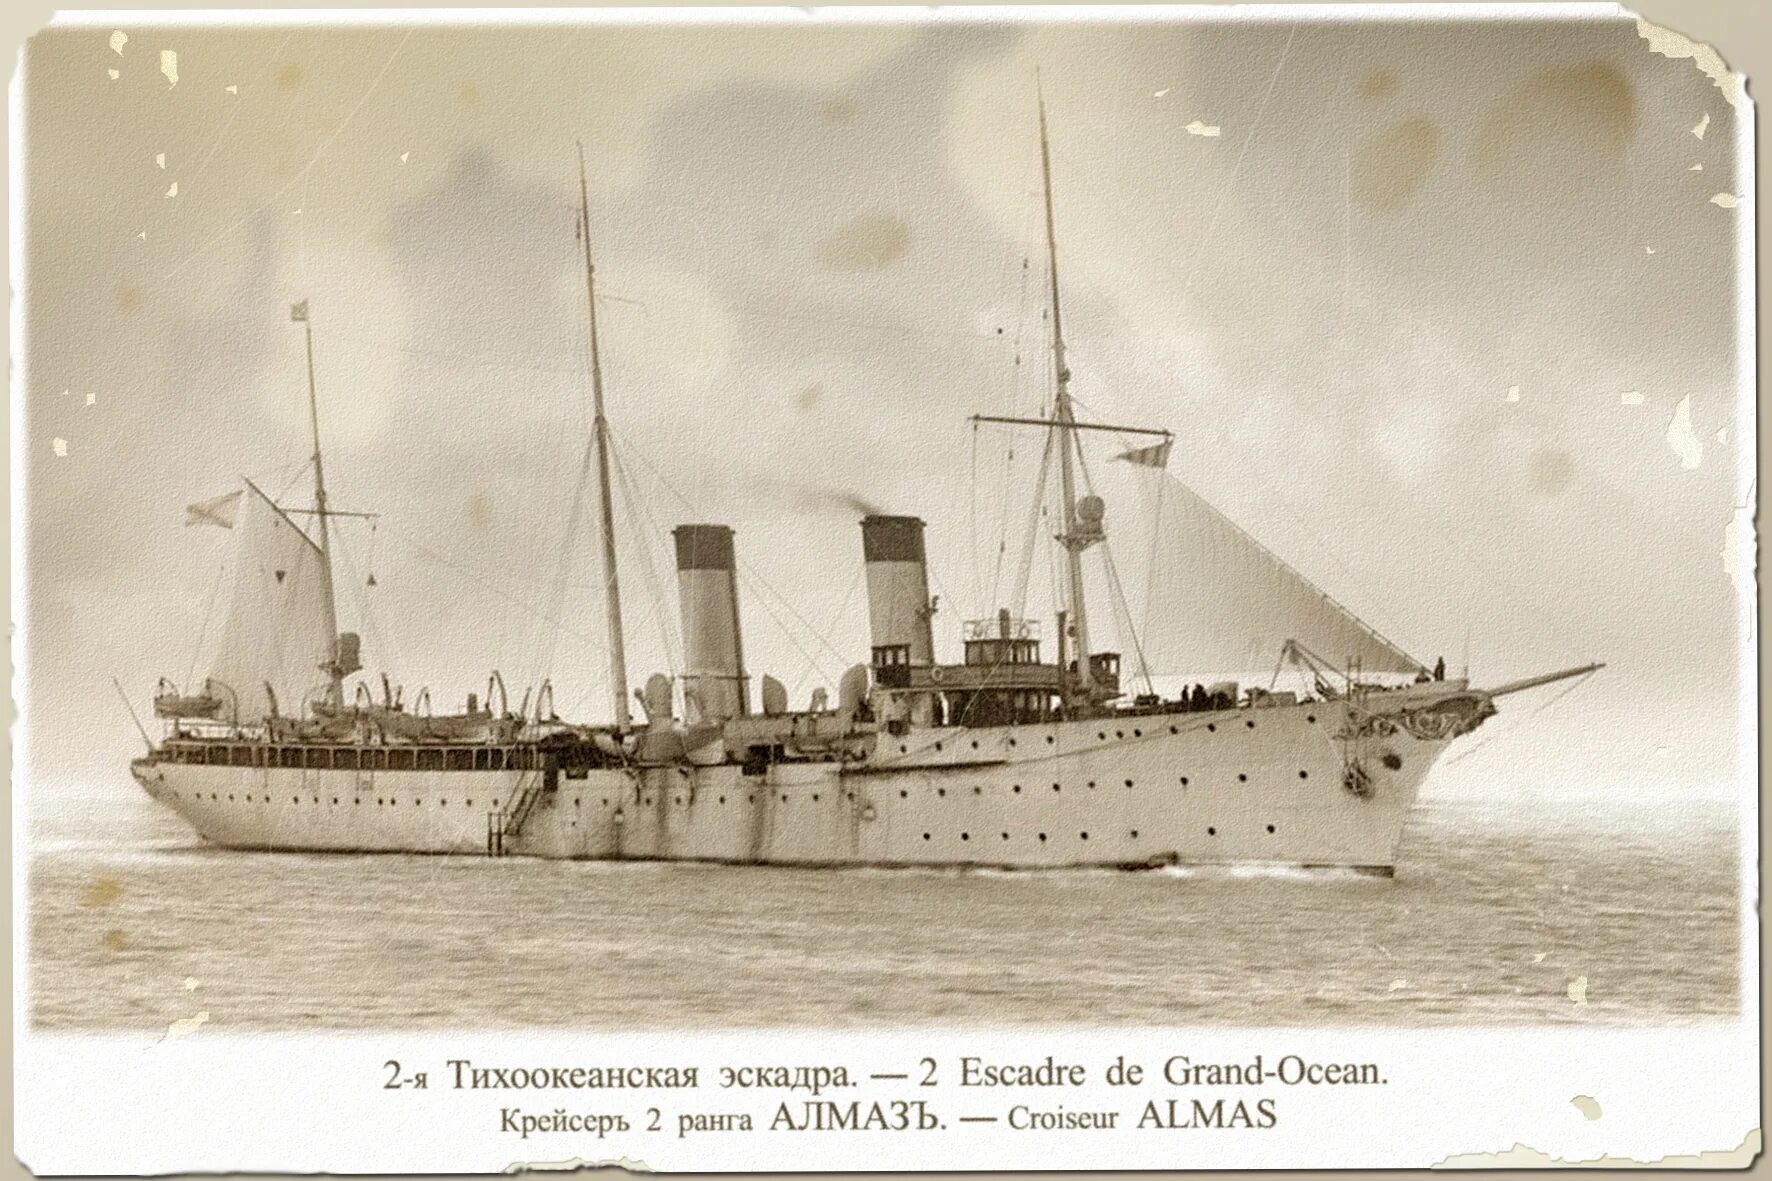 1 тихоокеанская эскадра. Тихоокеанская эскадра 1904. 2-Я Тихоокеанская эскадра 1904.